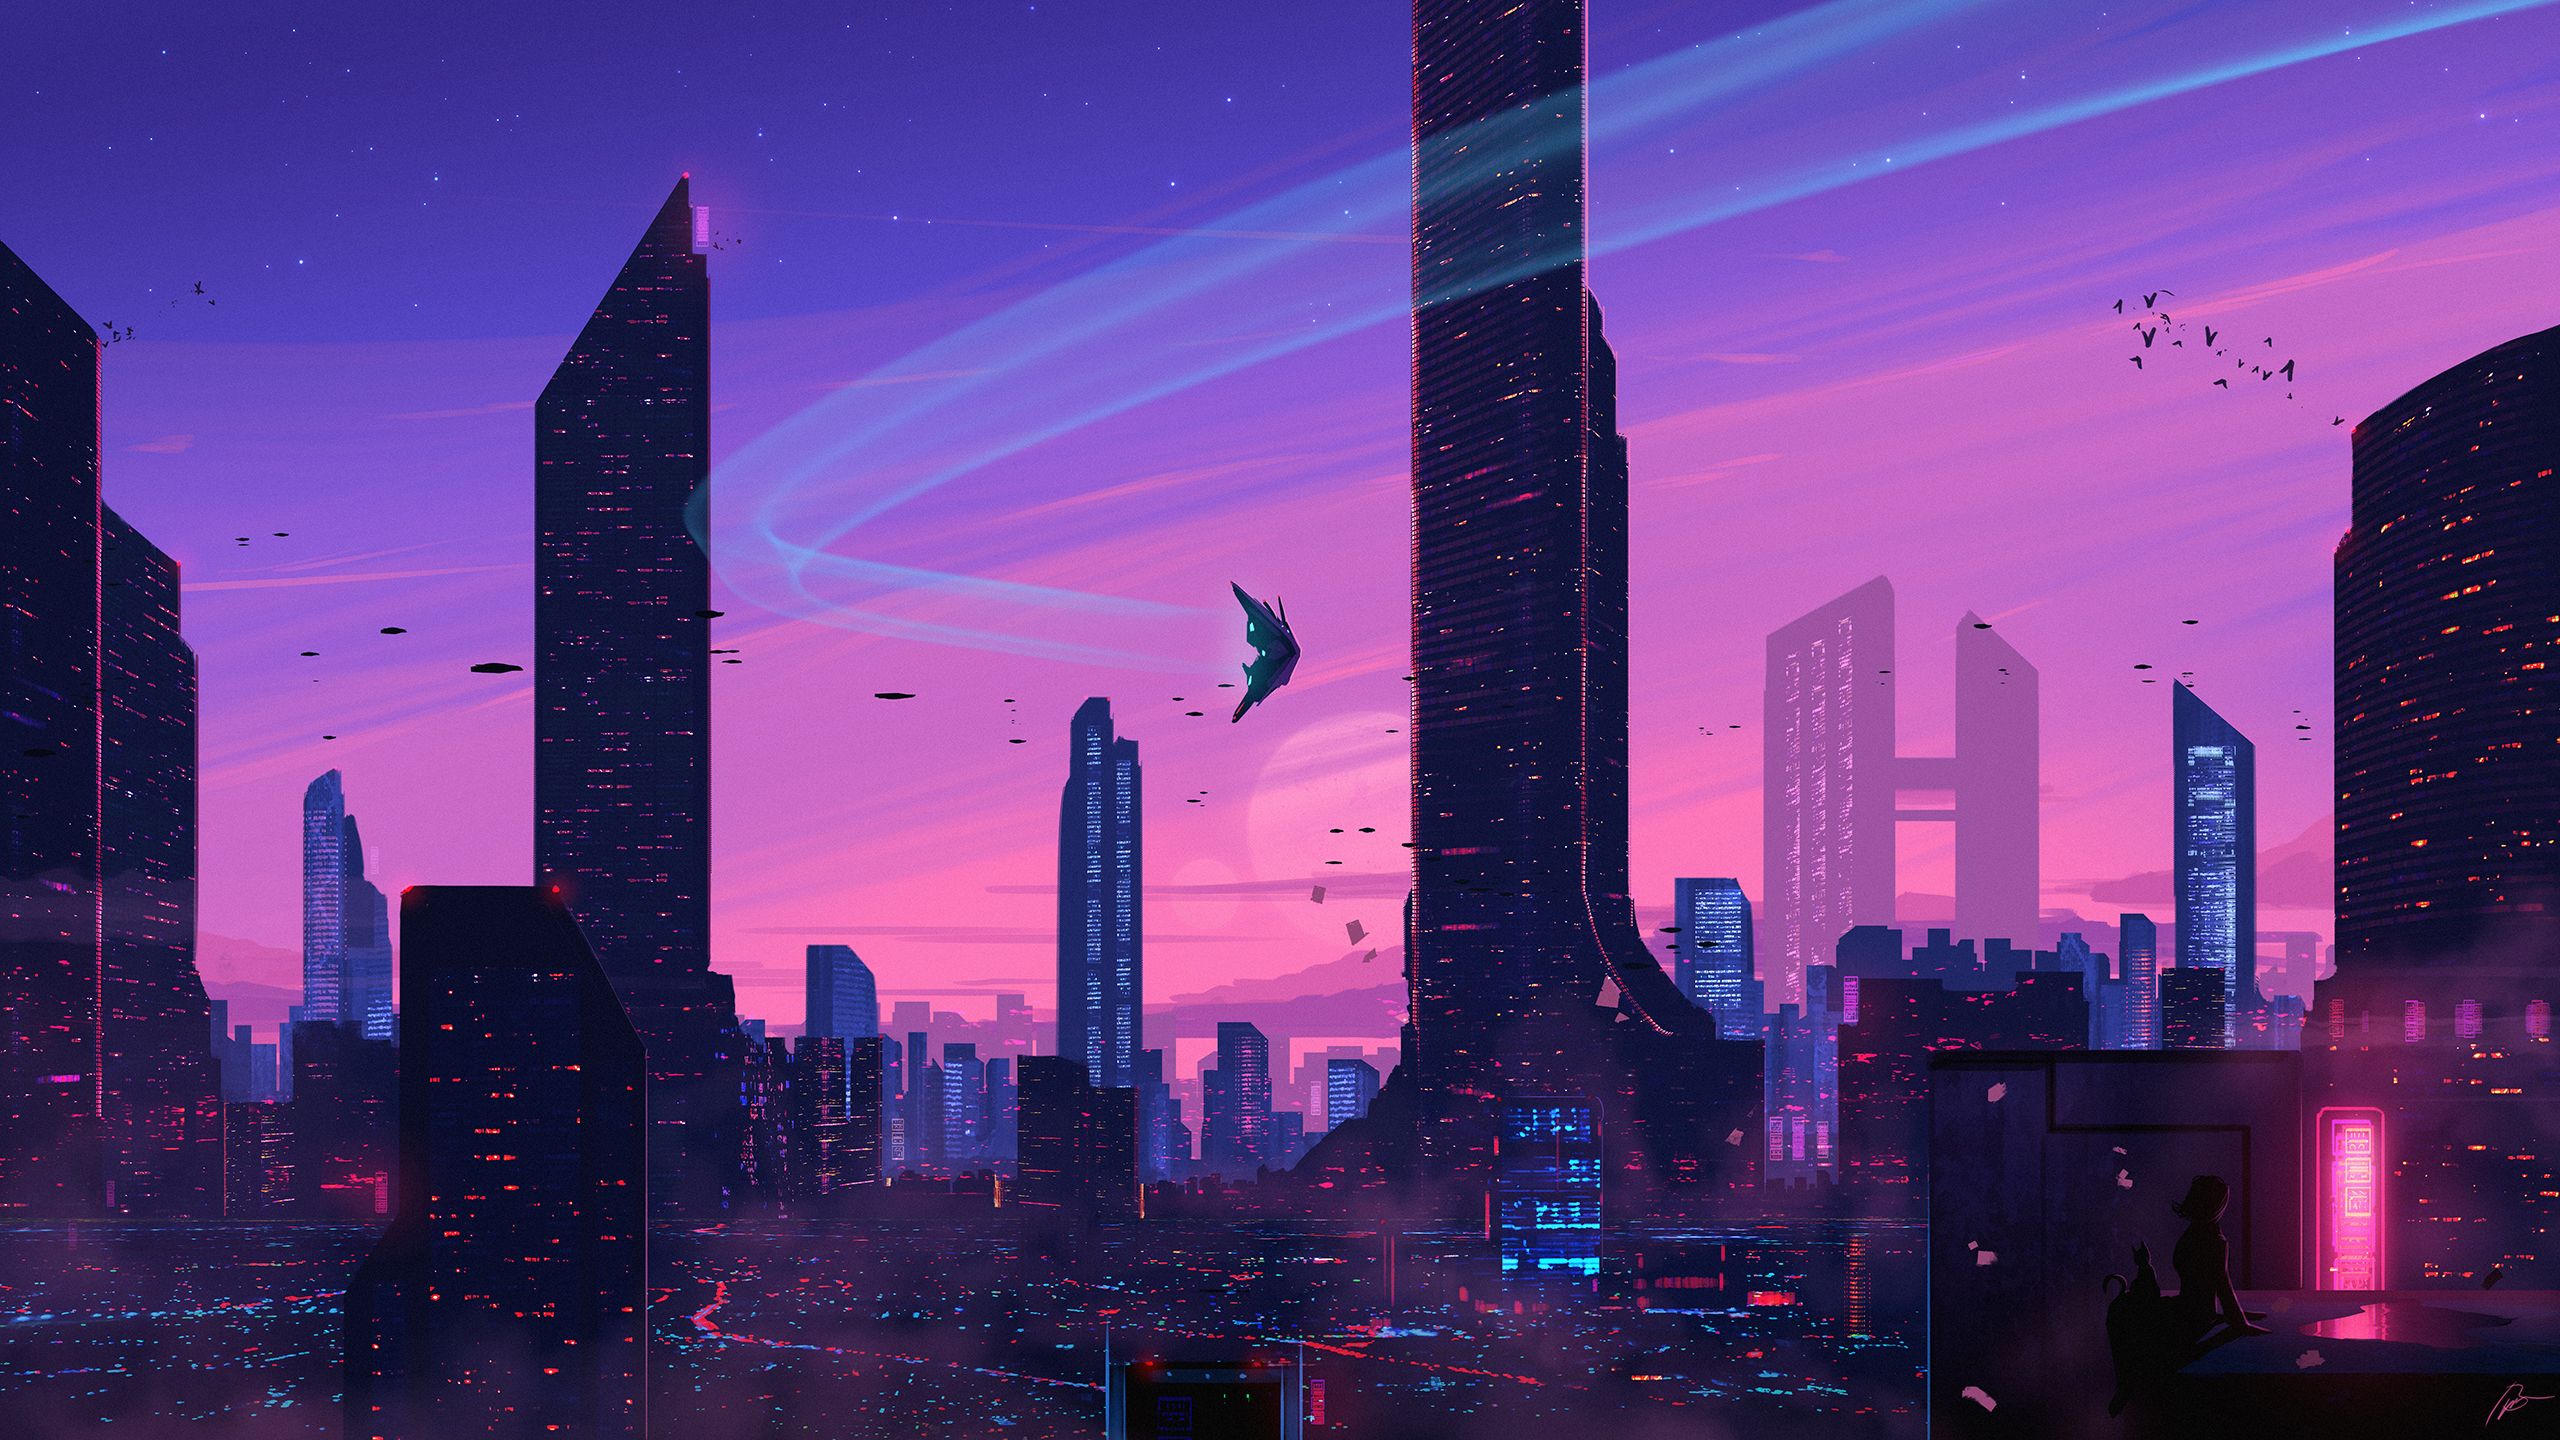 futuristic, sci fi, city, cat, cityscape, skyscraper images